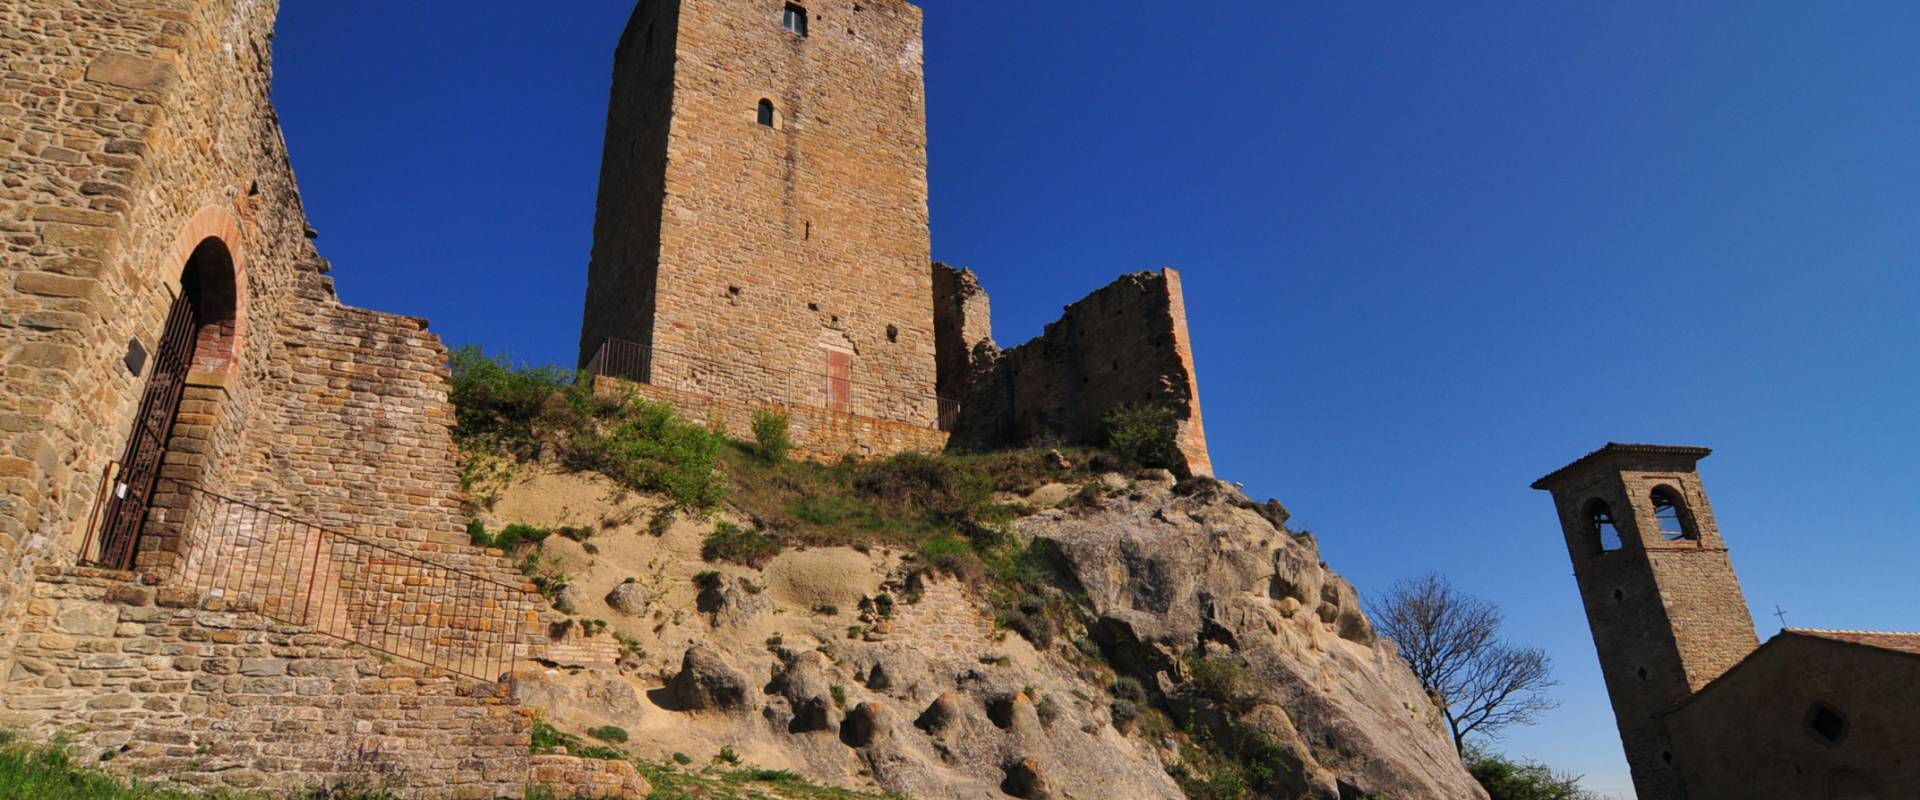 Castello medioevale di Carpineti photo by Lugarex